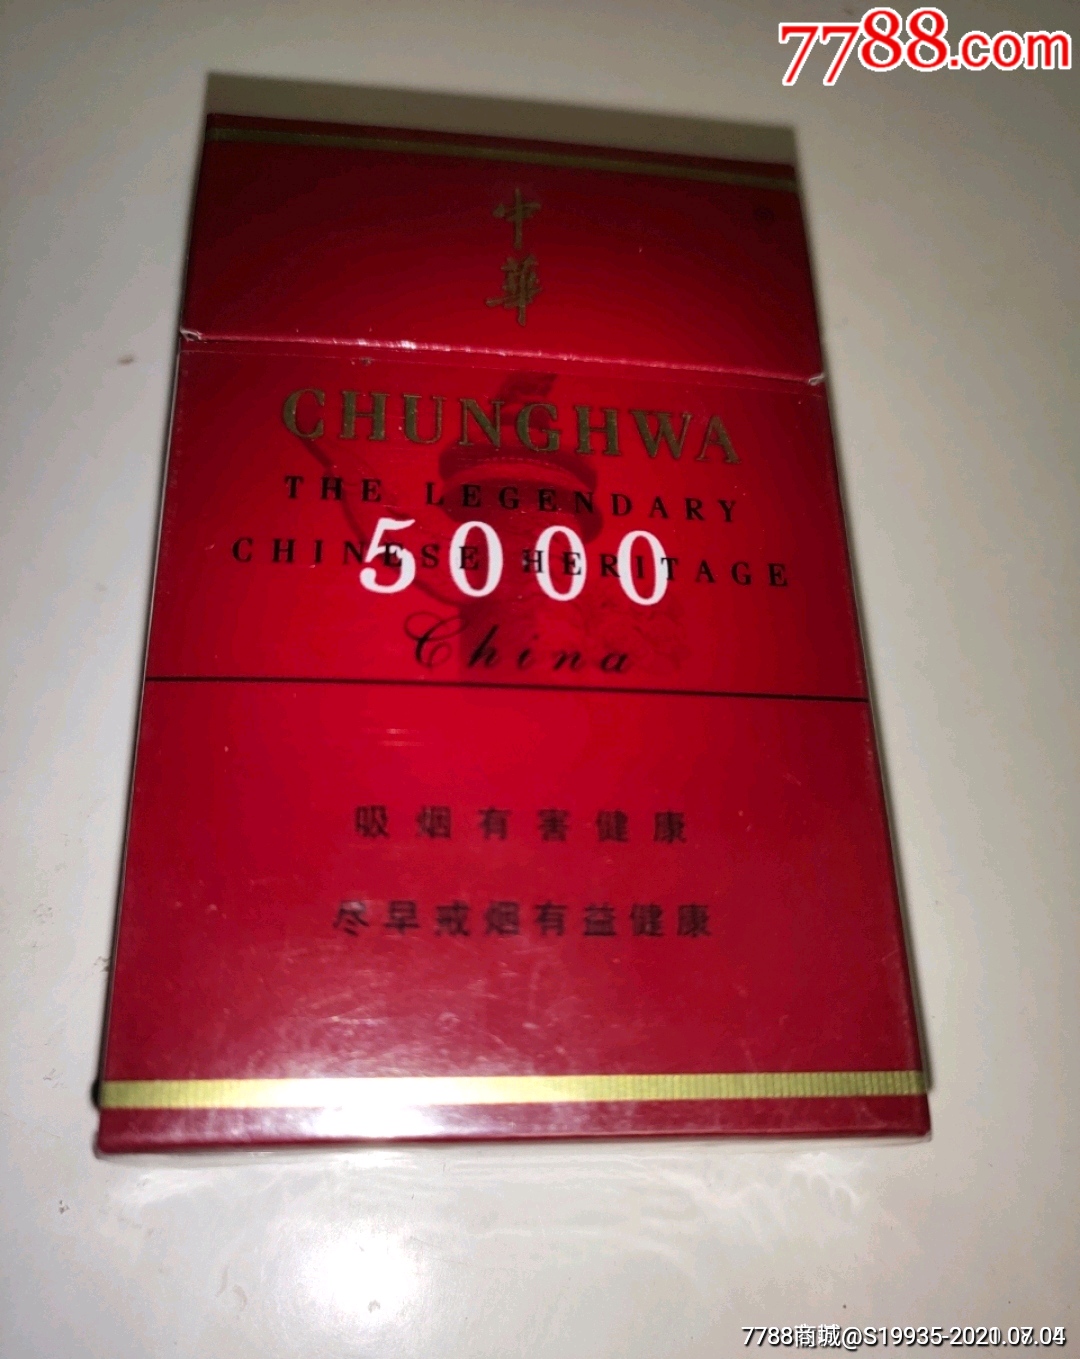 中华5000专供出口图片